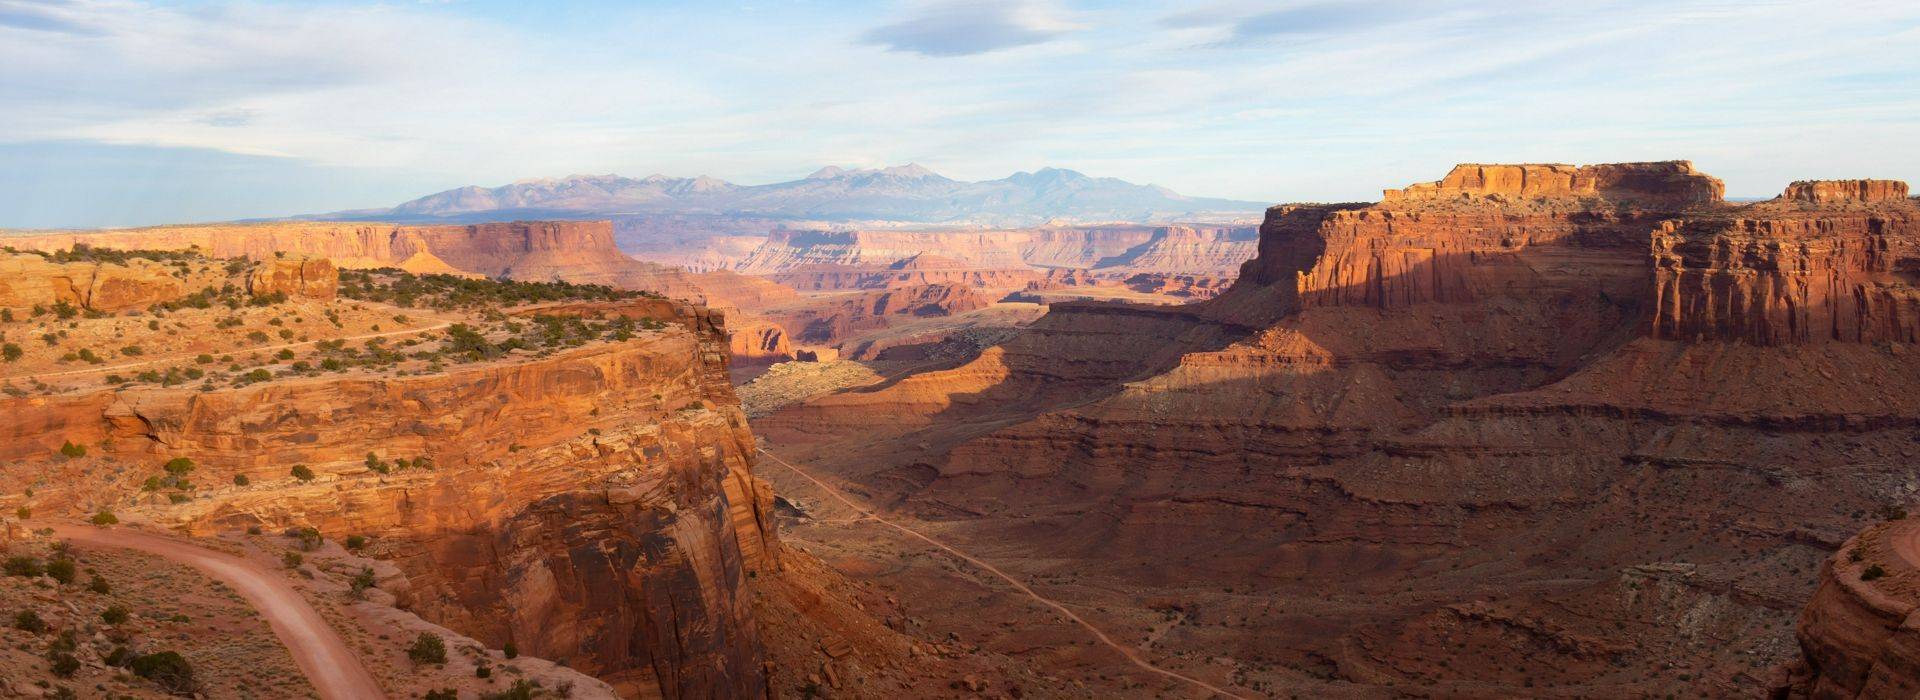 Intrepid-Travel-christoph-von-gellhorn-Utah-CanyonlandsNationalPark-unsplash.jpg